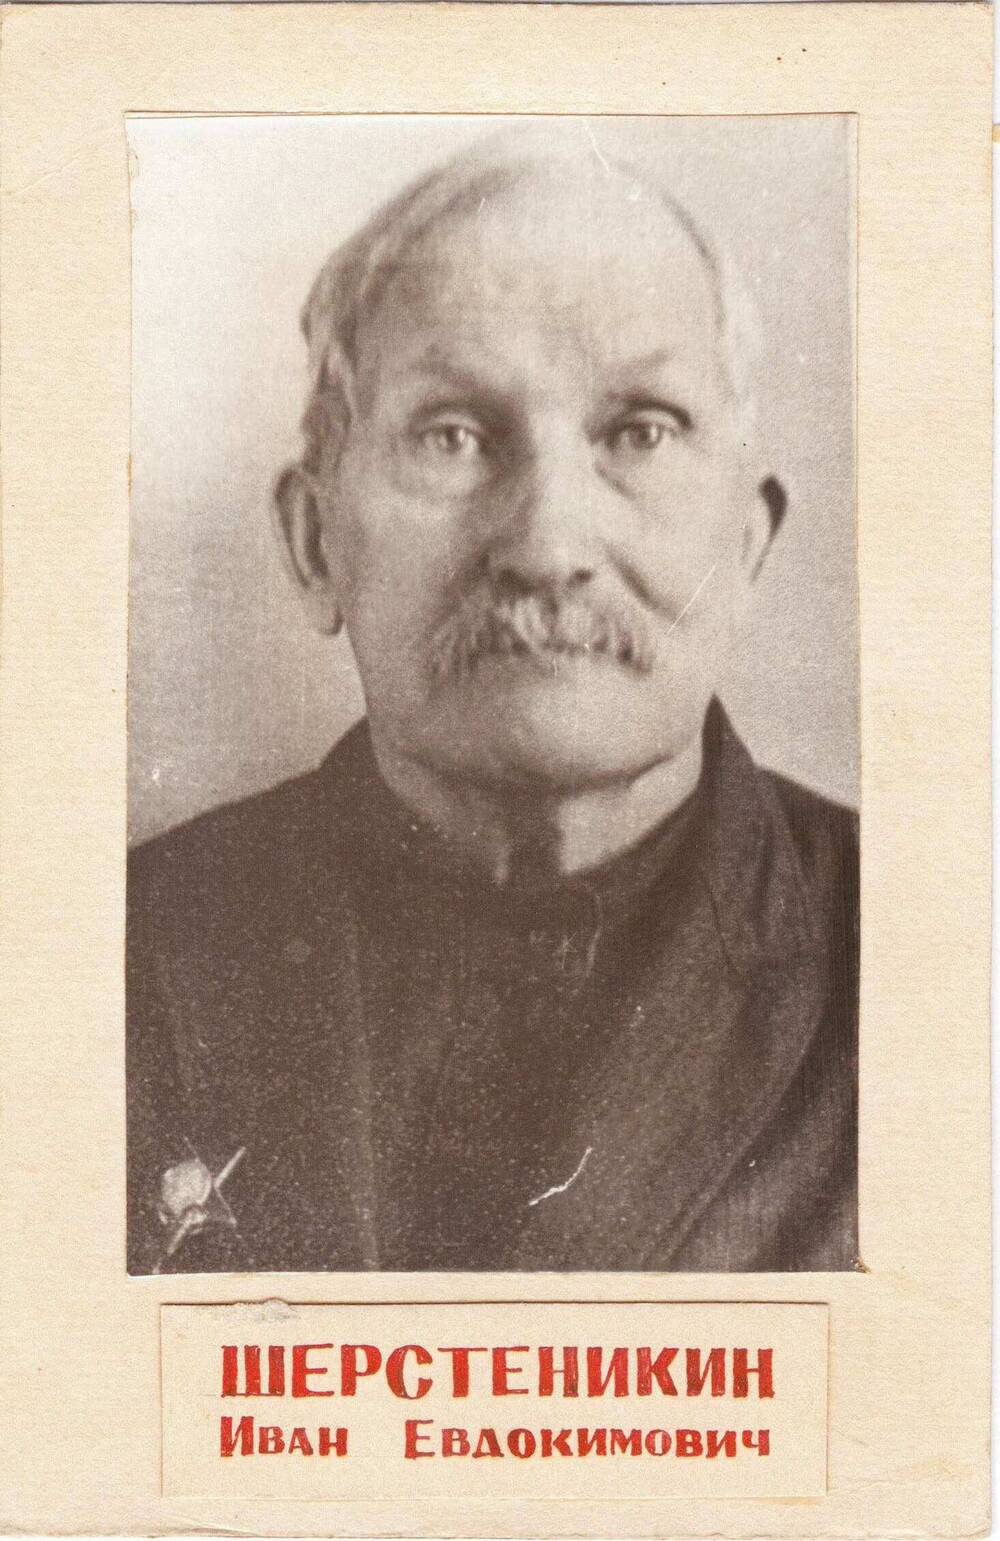 Фотопортрет погрудный на паспарту Шерстеникина Ивана Евдокимовича